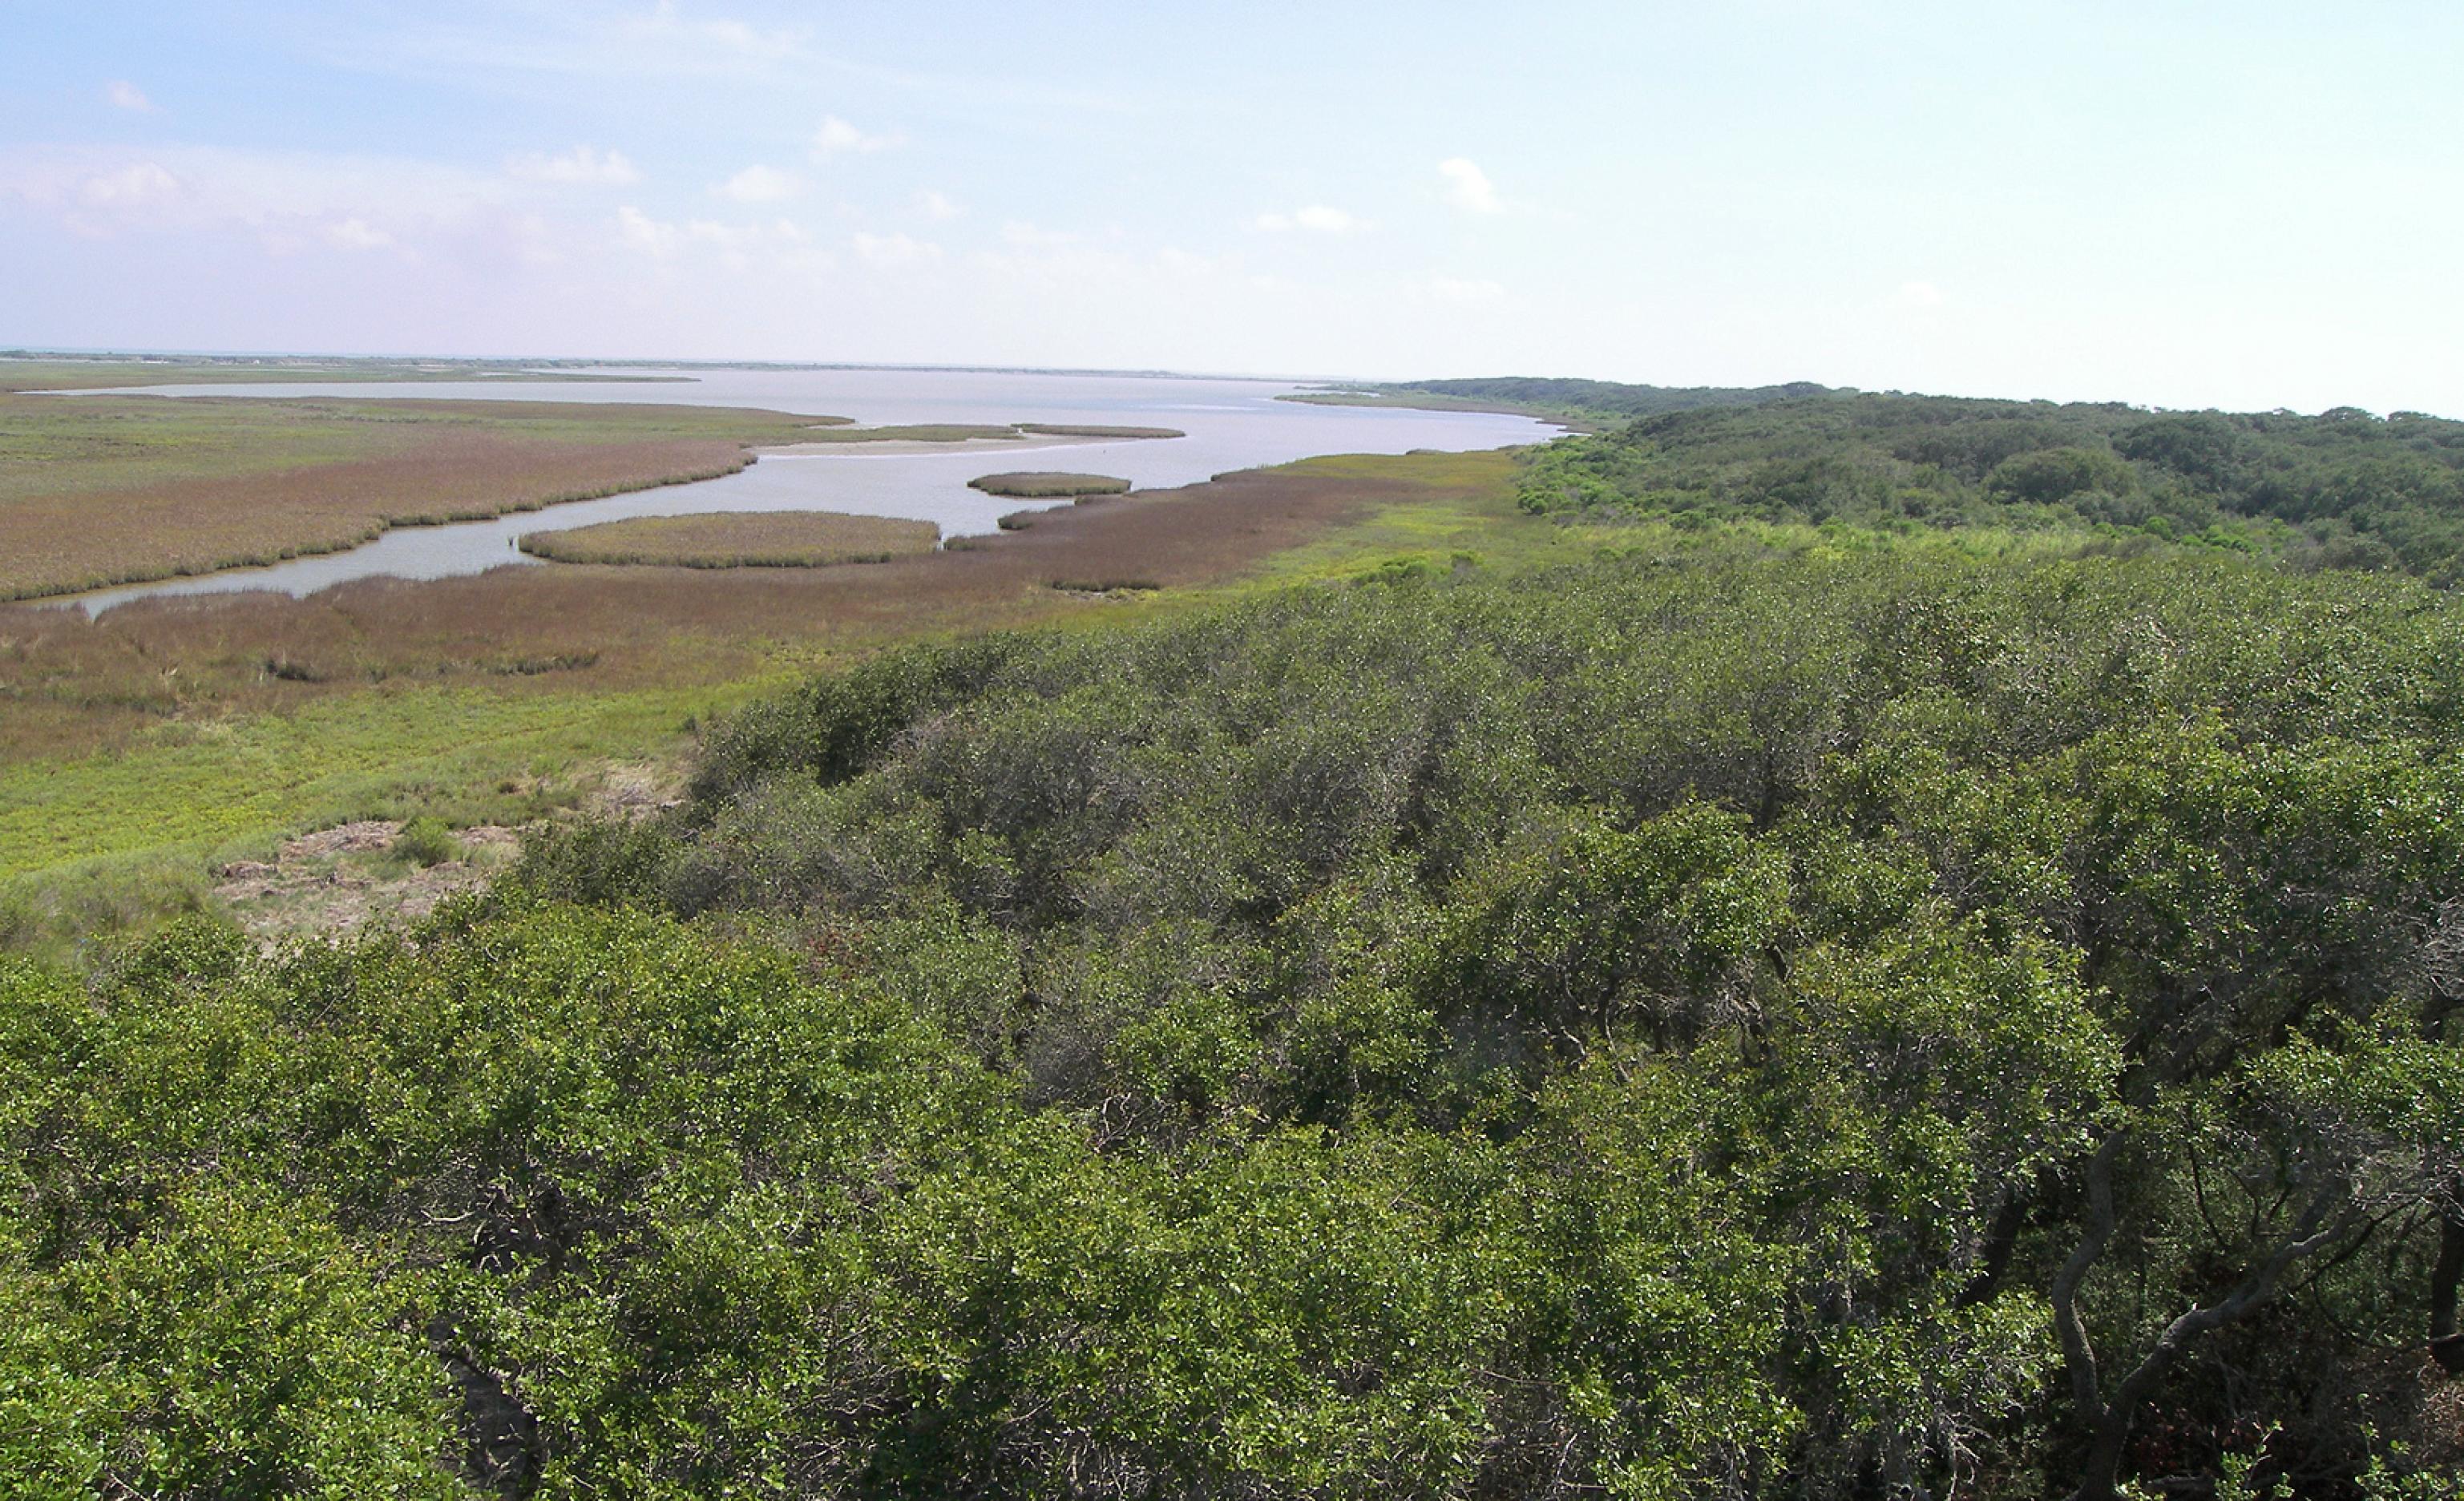 Blick auf das Aransas National Wildlife Refuge im Süden des US-Bundesstaats Texas, im Vordergrund dichte Vegetation, weiter hinten das Feuchtgebiet mit offenen Wasserflächen hin zum Meer.